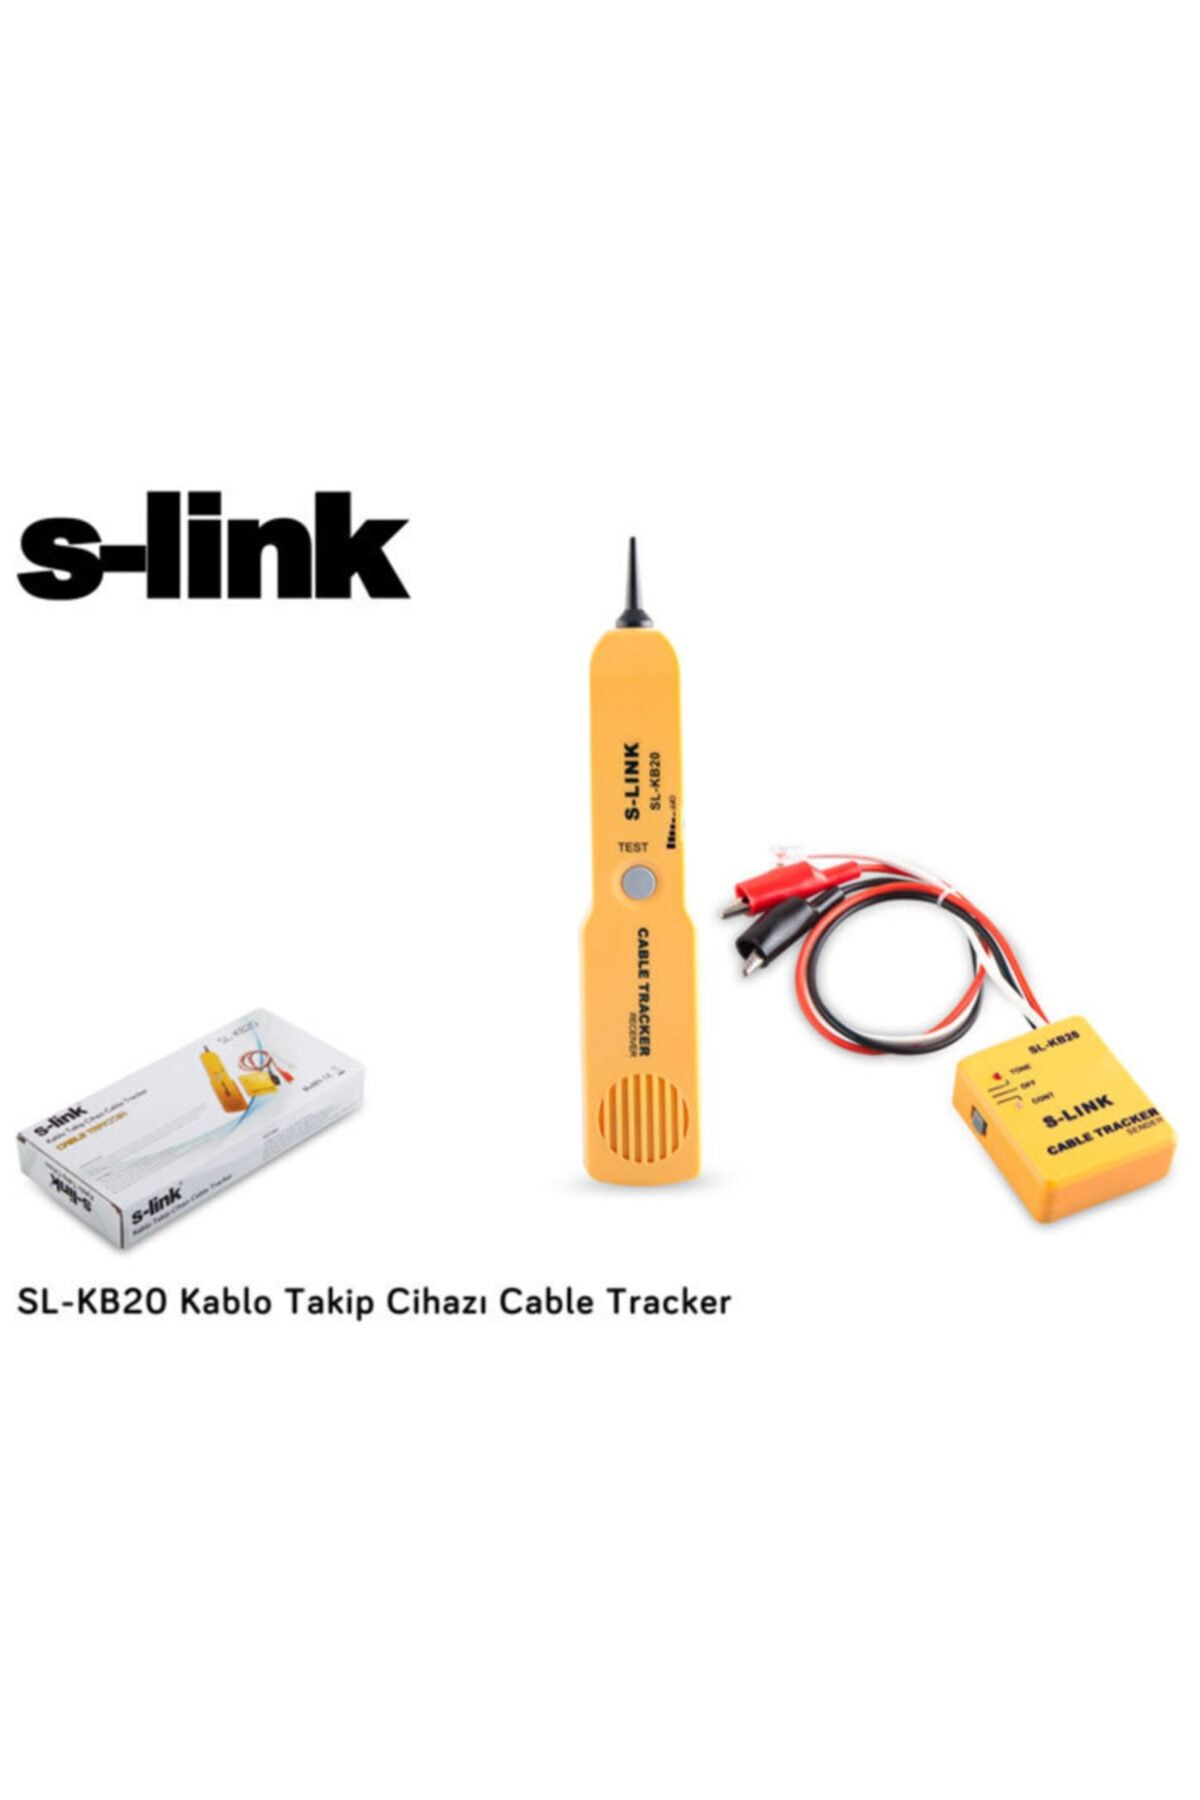 S-Link Sl-kb20 Kablo Takip Cihazı Kablo Bulucu Tracker Bili Bili